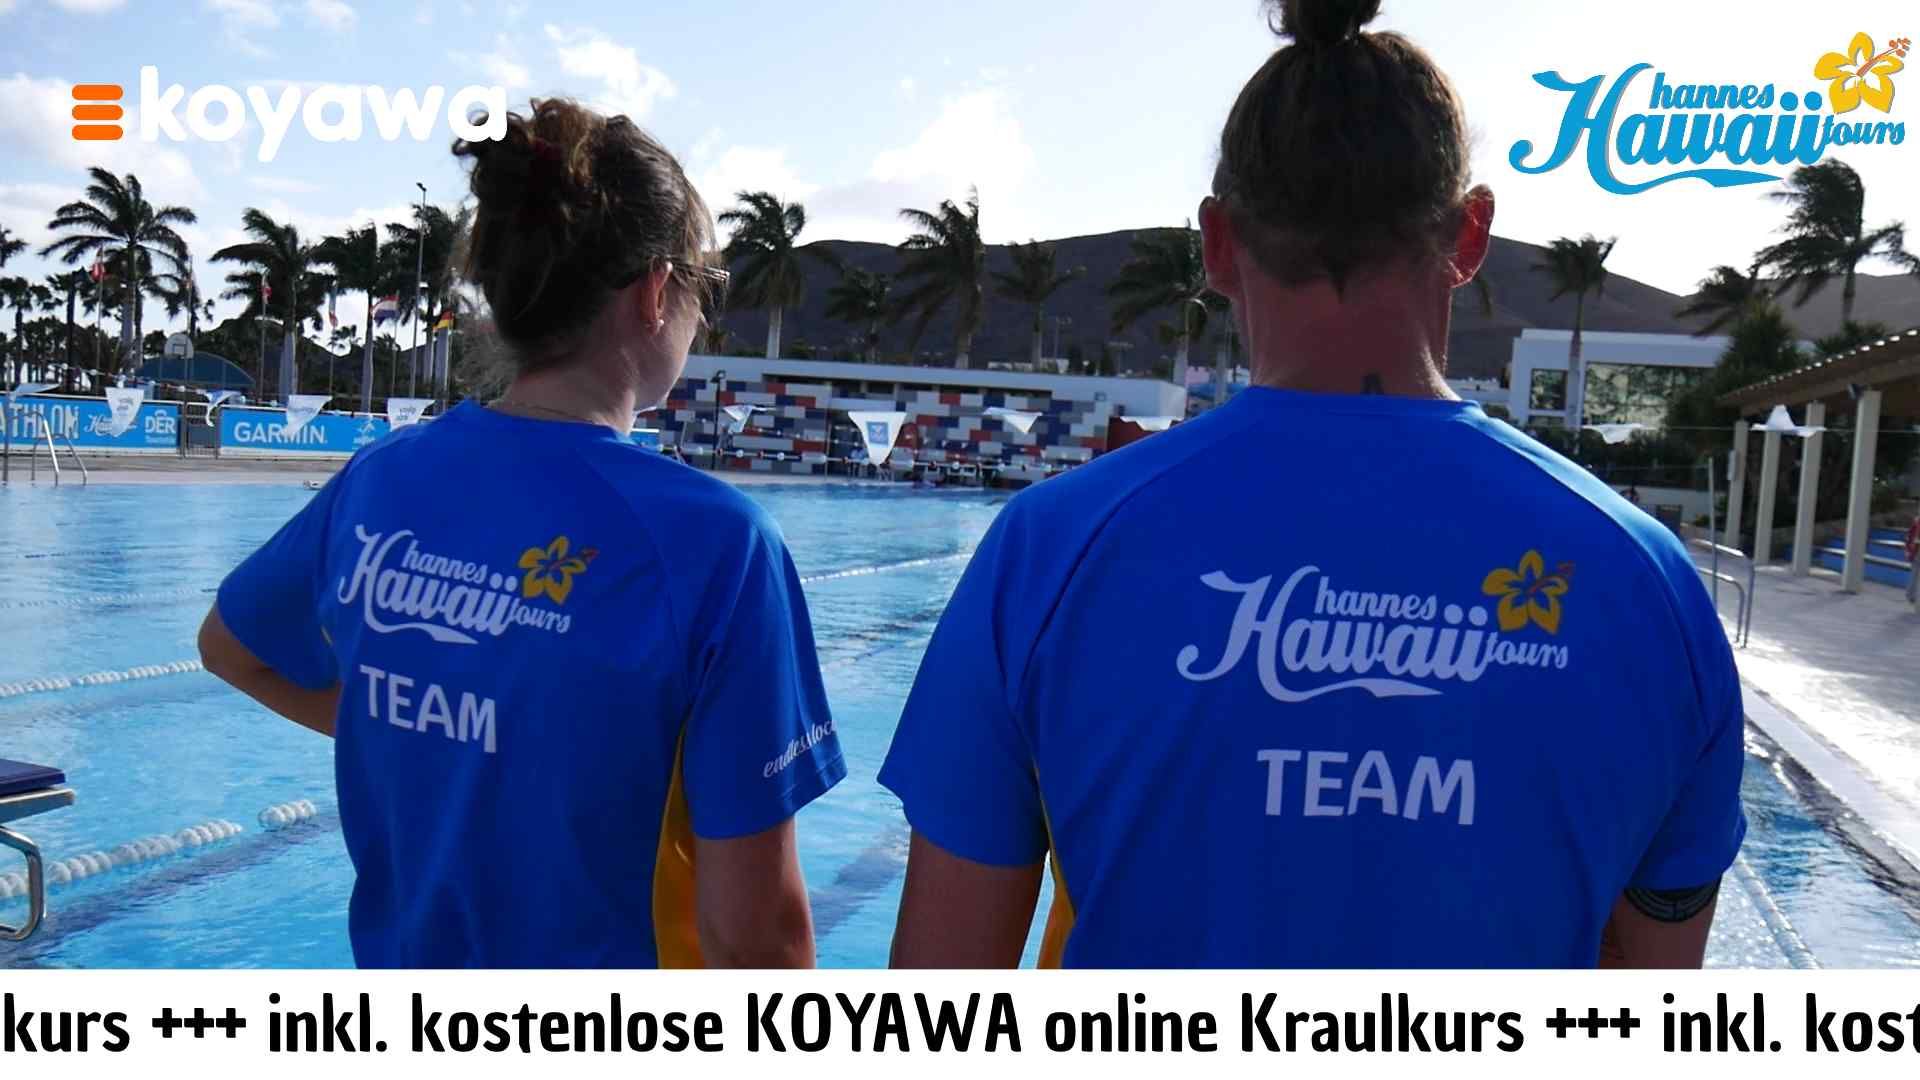 Betreuung am Beckenrand, Hannes Hawaii Tours - Koyawa